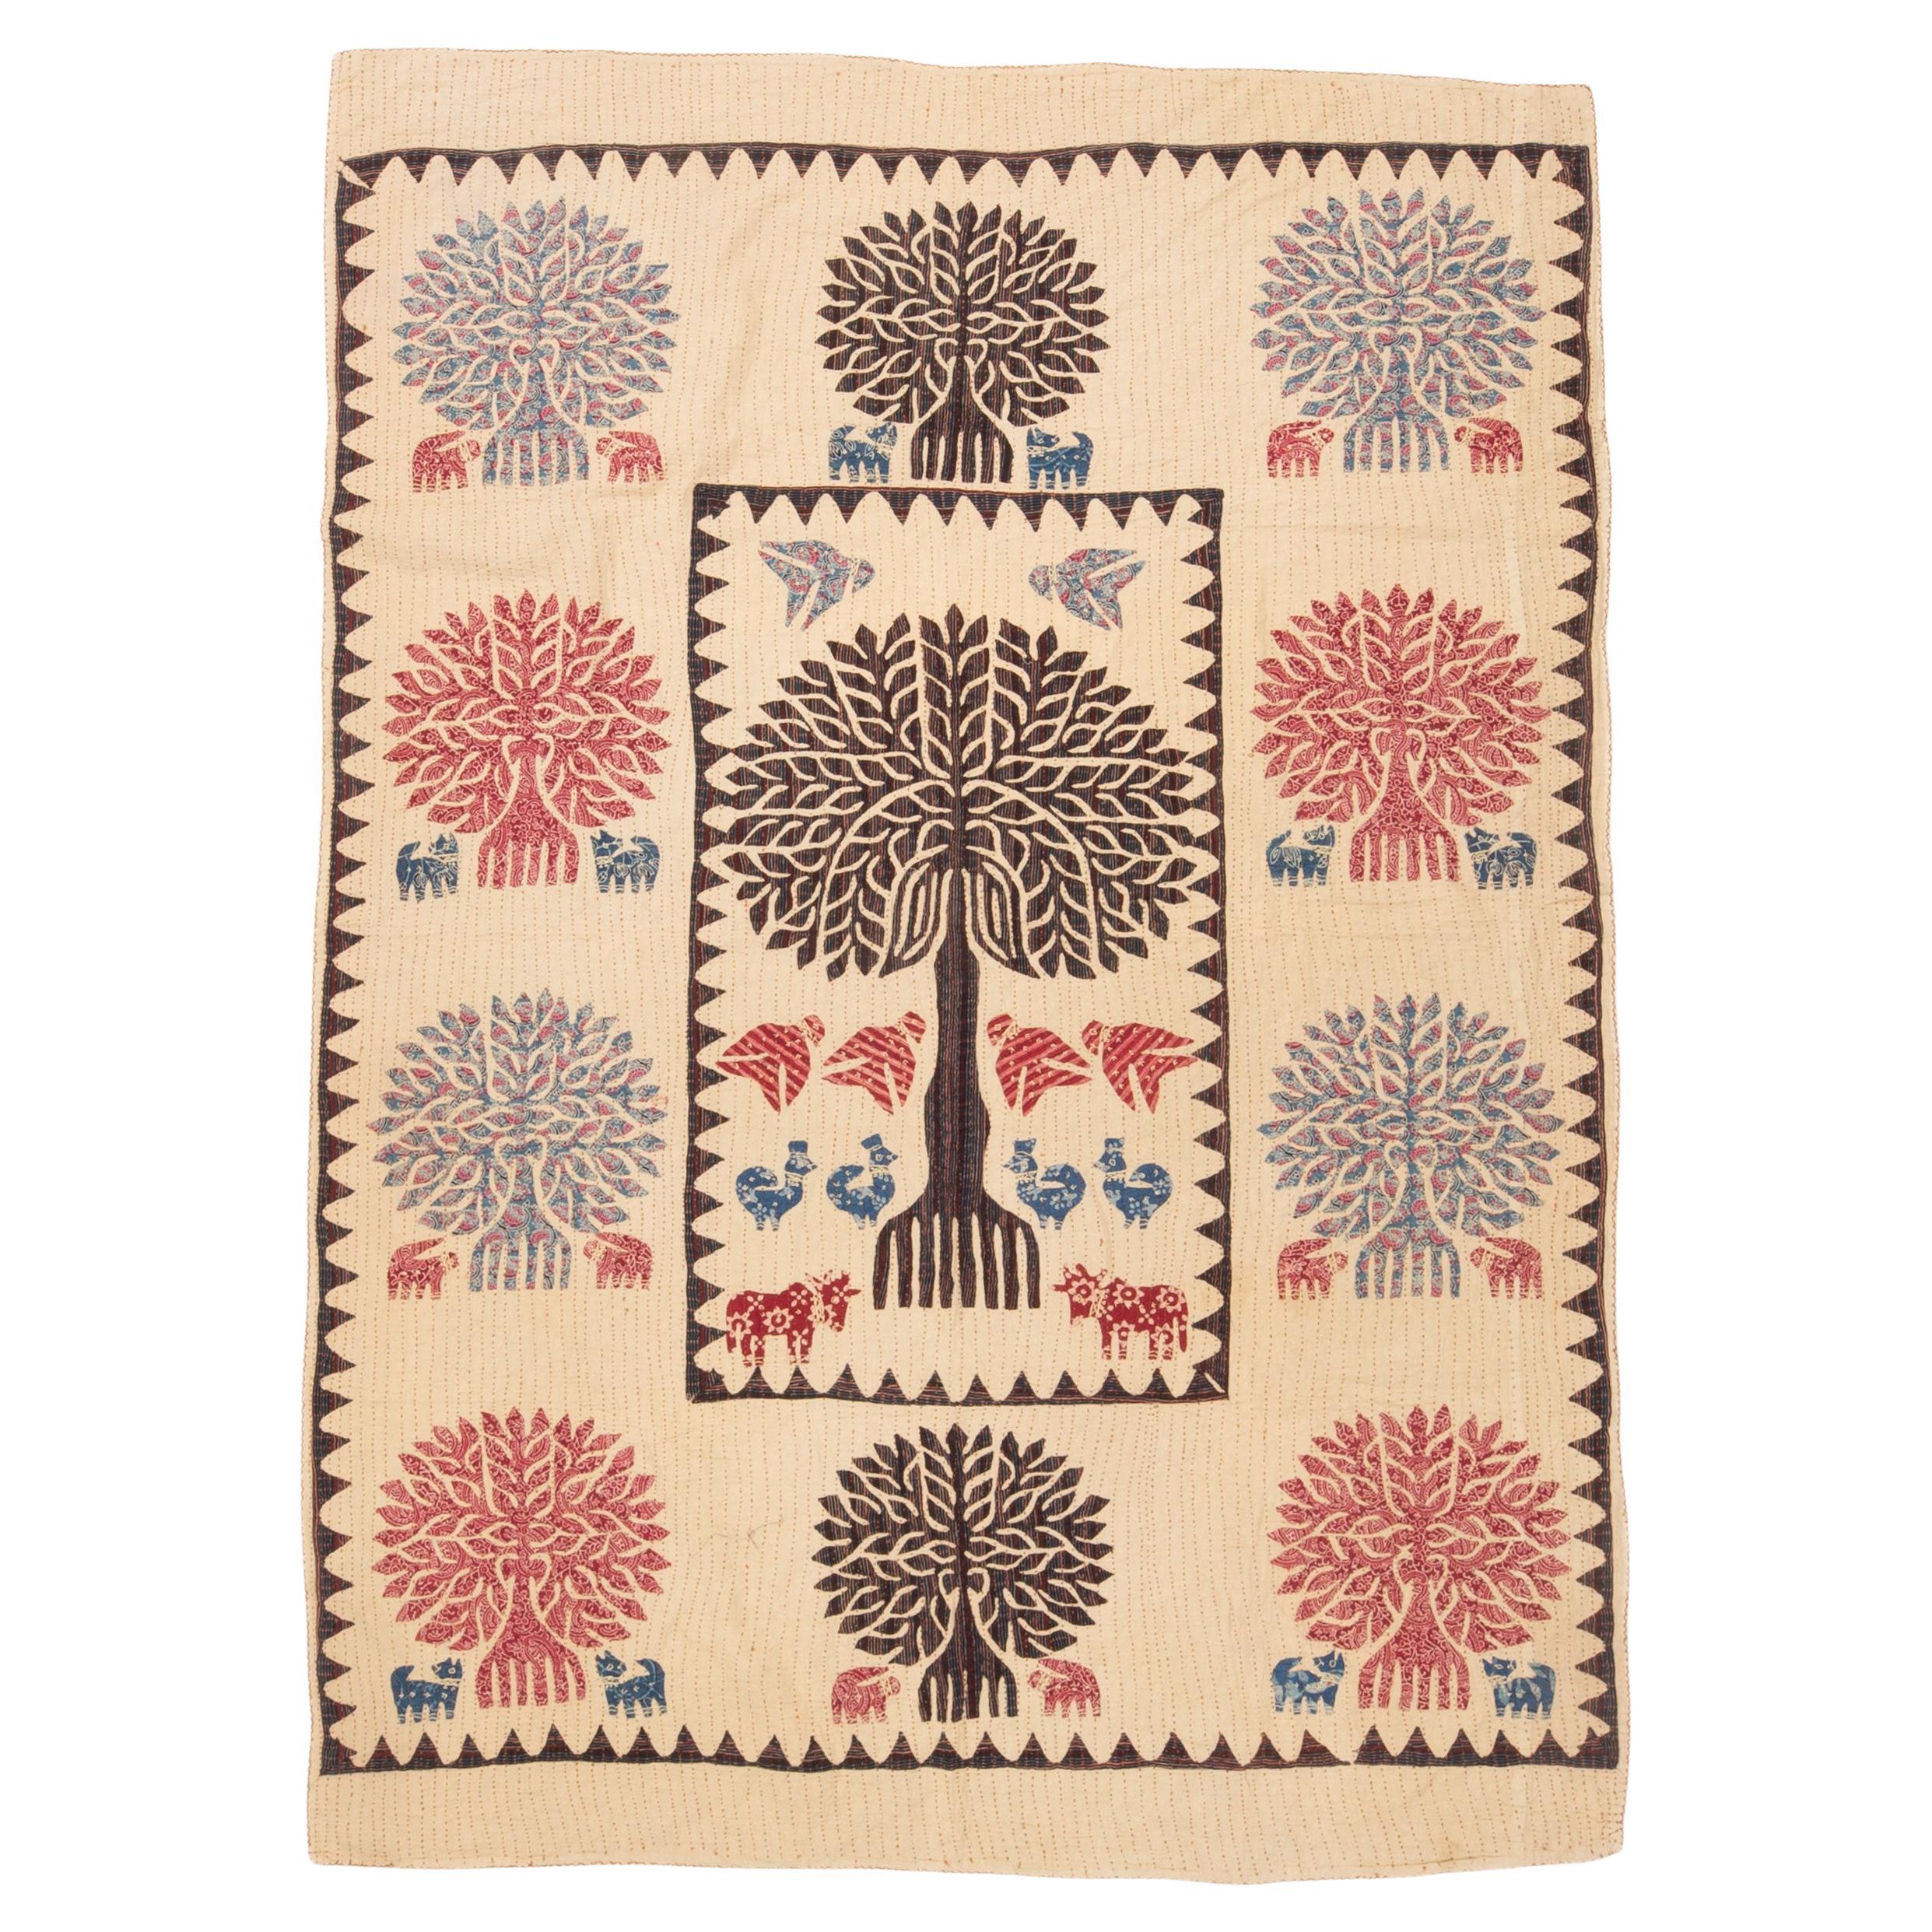 Vintage Indian Tree of Life Applique Kantha Quilt For Sale